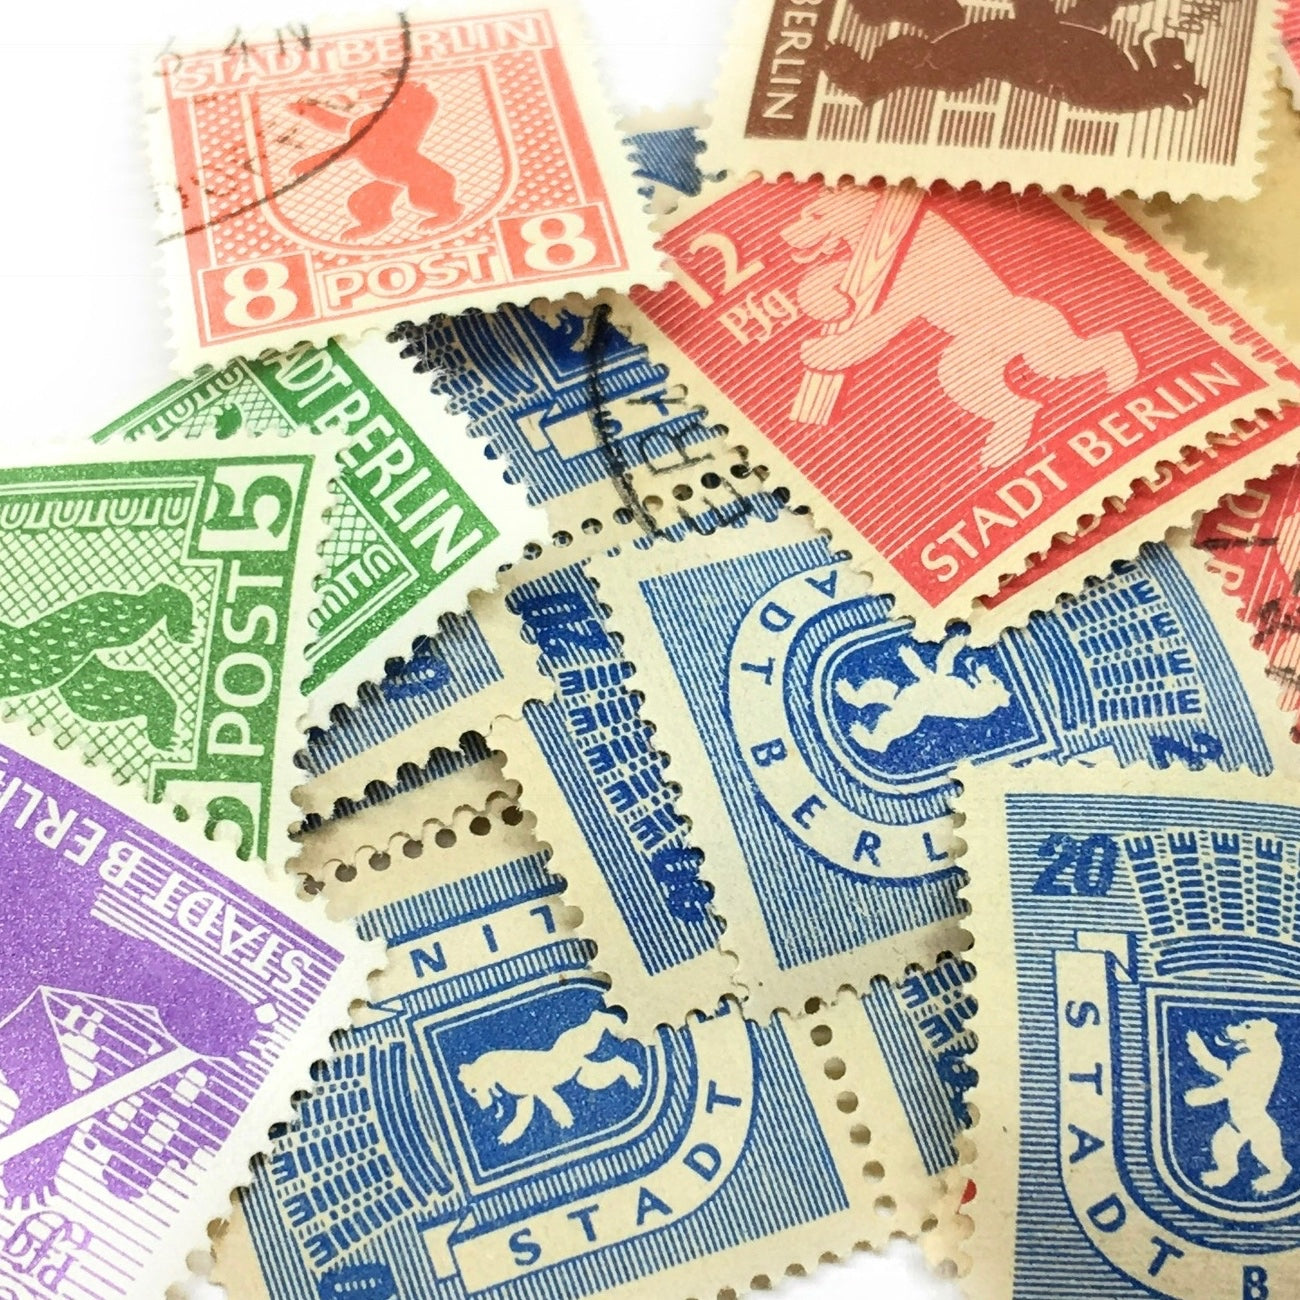 Manschettenknöpfe mit Stadt Berlin Wappen mit Bär Briefmarken im Typewriter Design. Limitierte Auflage